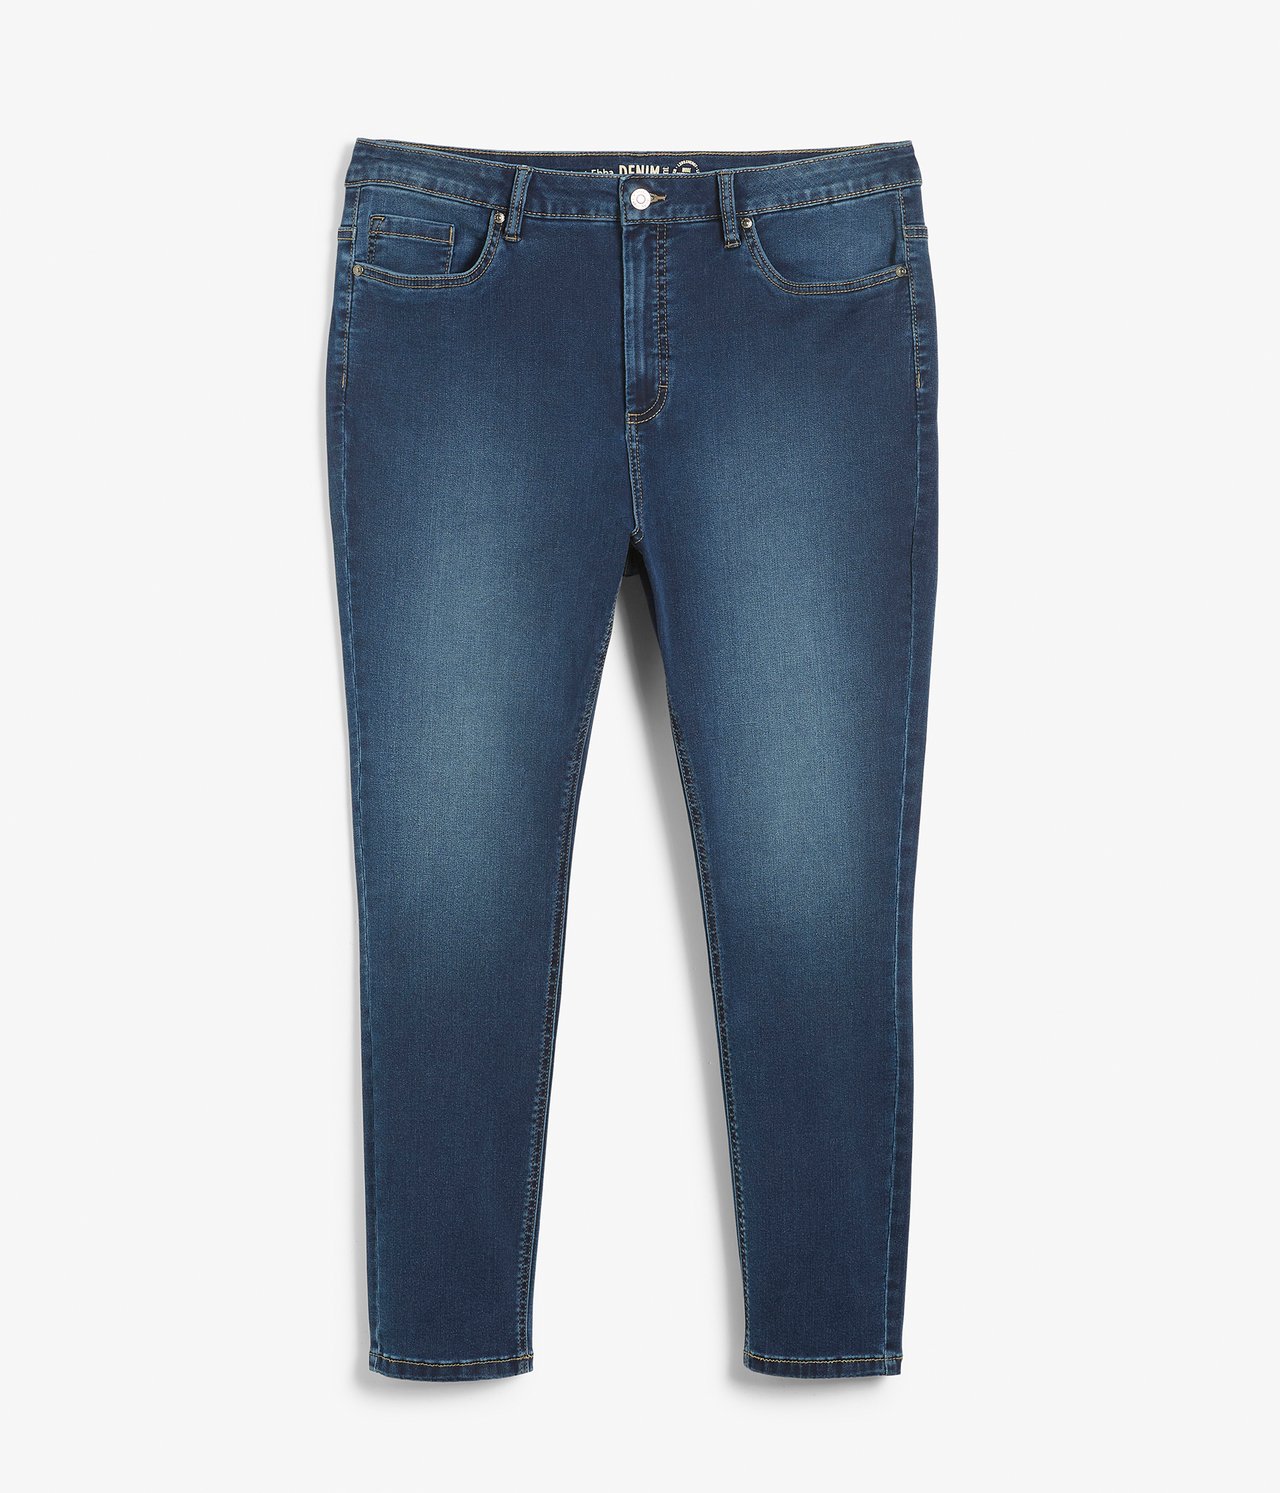 Ebba slim jeans short leg - Tumma denimi - 6